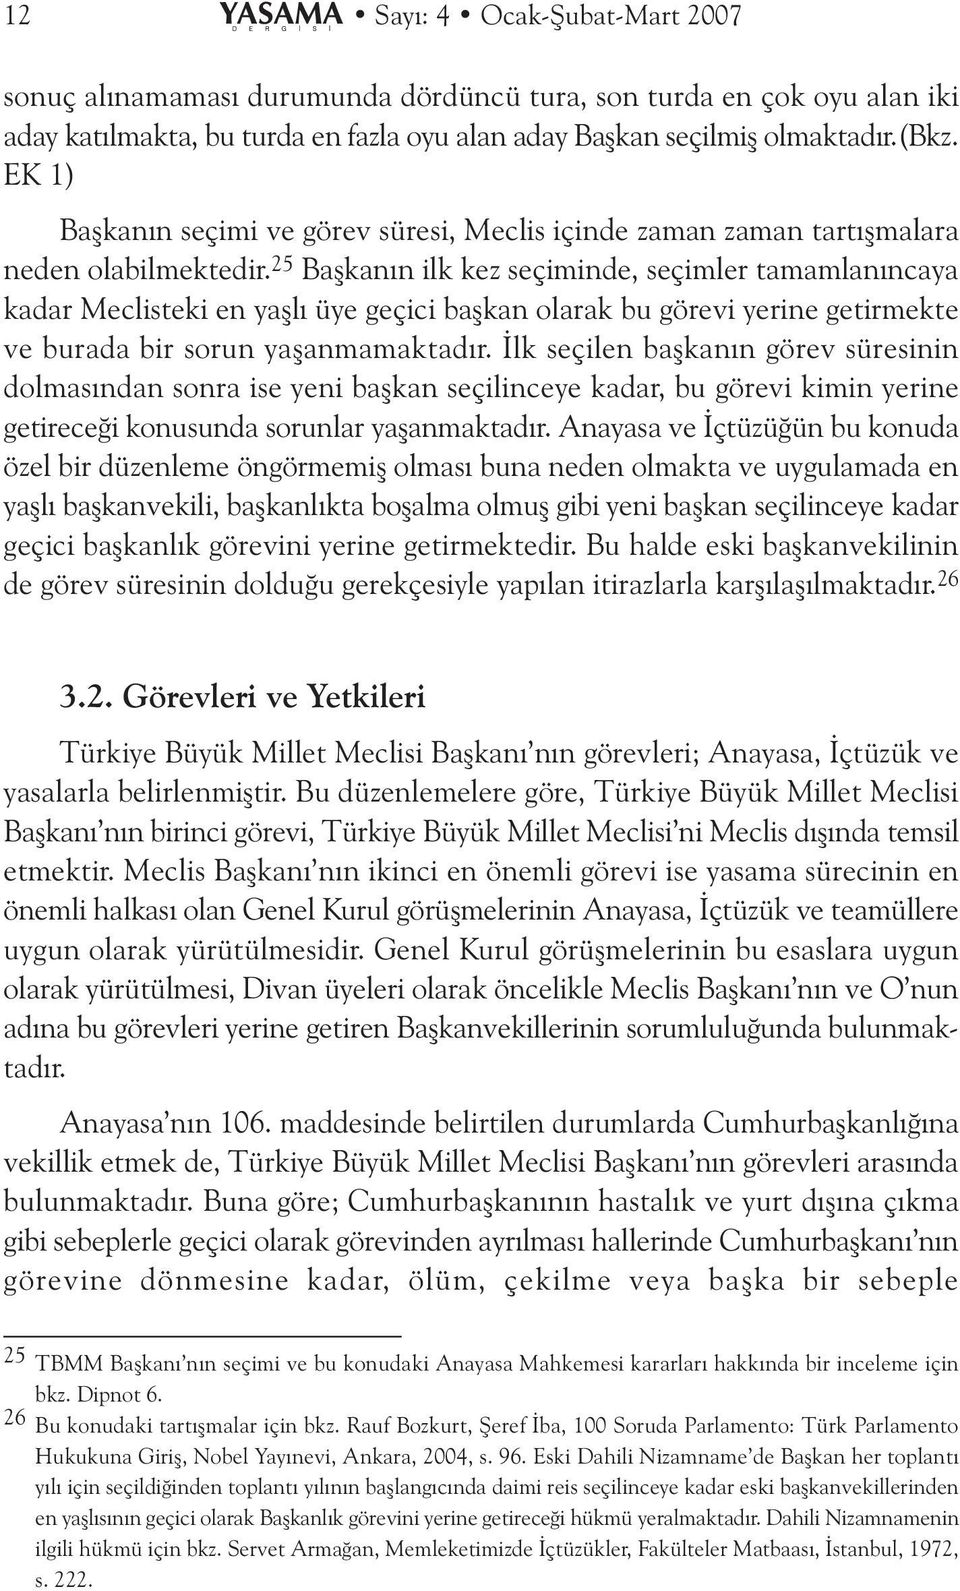 25 Baþkanýn ilk kez seçiminde, seçimler tamamlanýncaya kadar Meclisteki en yaþlý üye geçici baþkan olarak bu görevi yerine getirmekte ve burada bir sorun yaþanmamaktadýr.